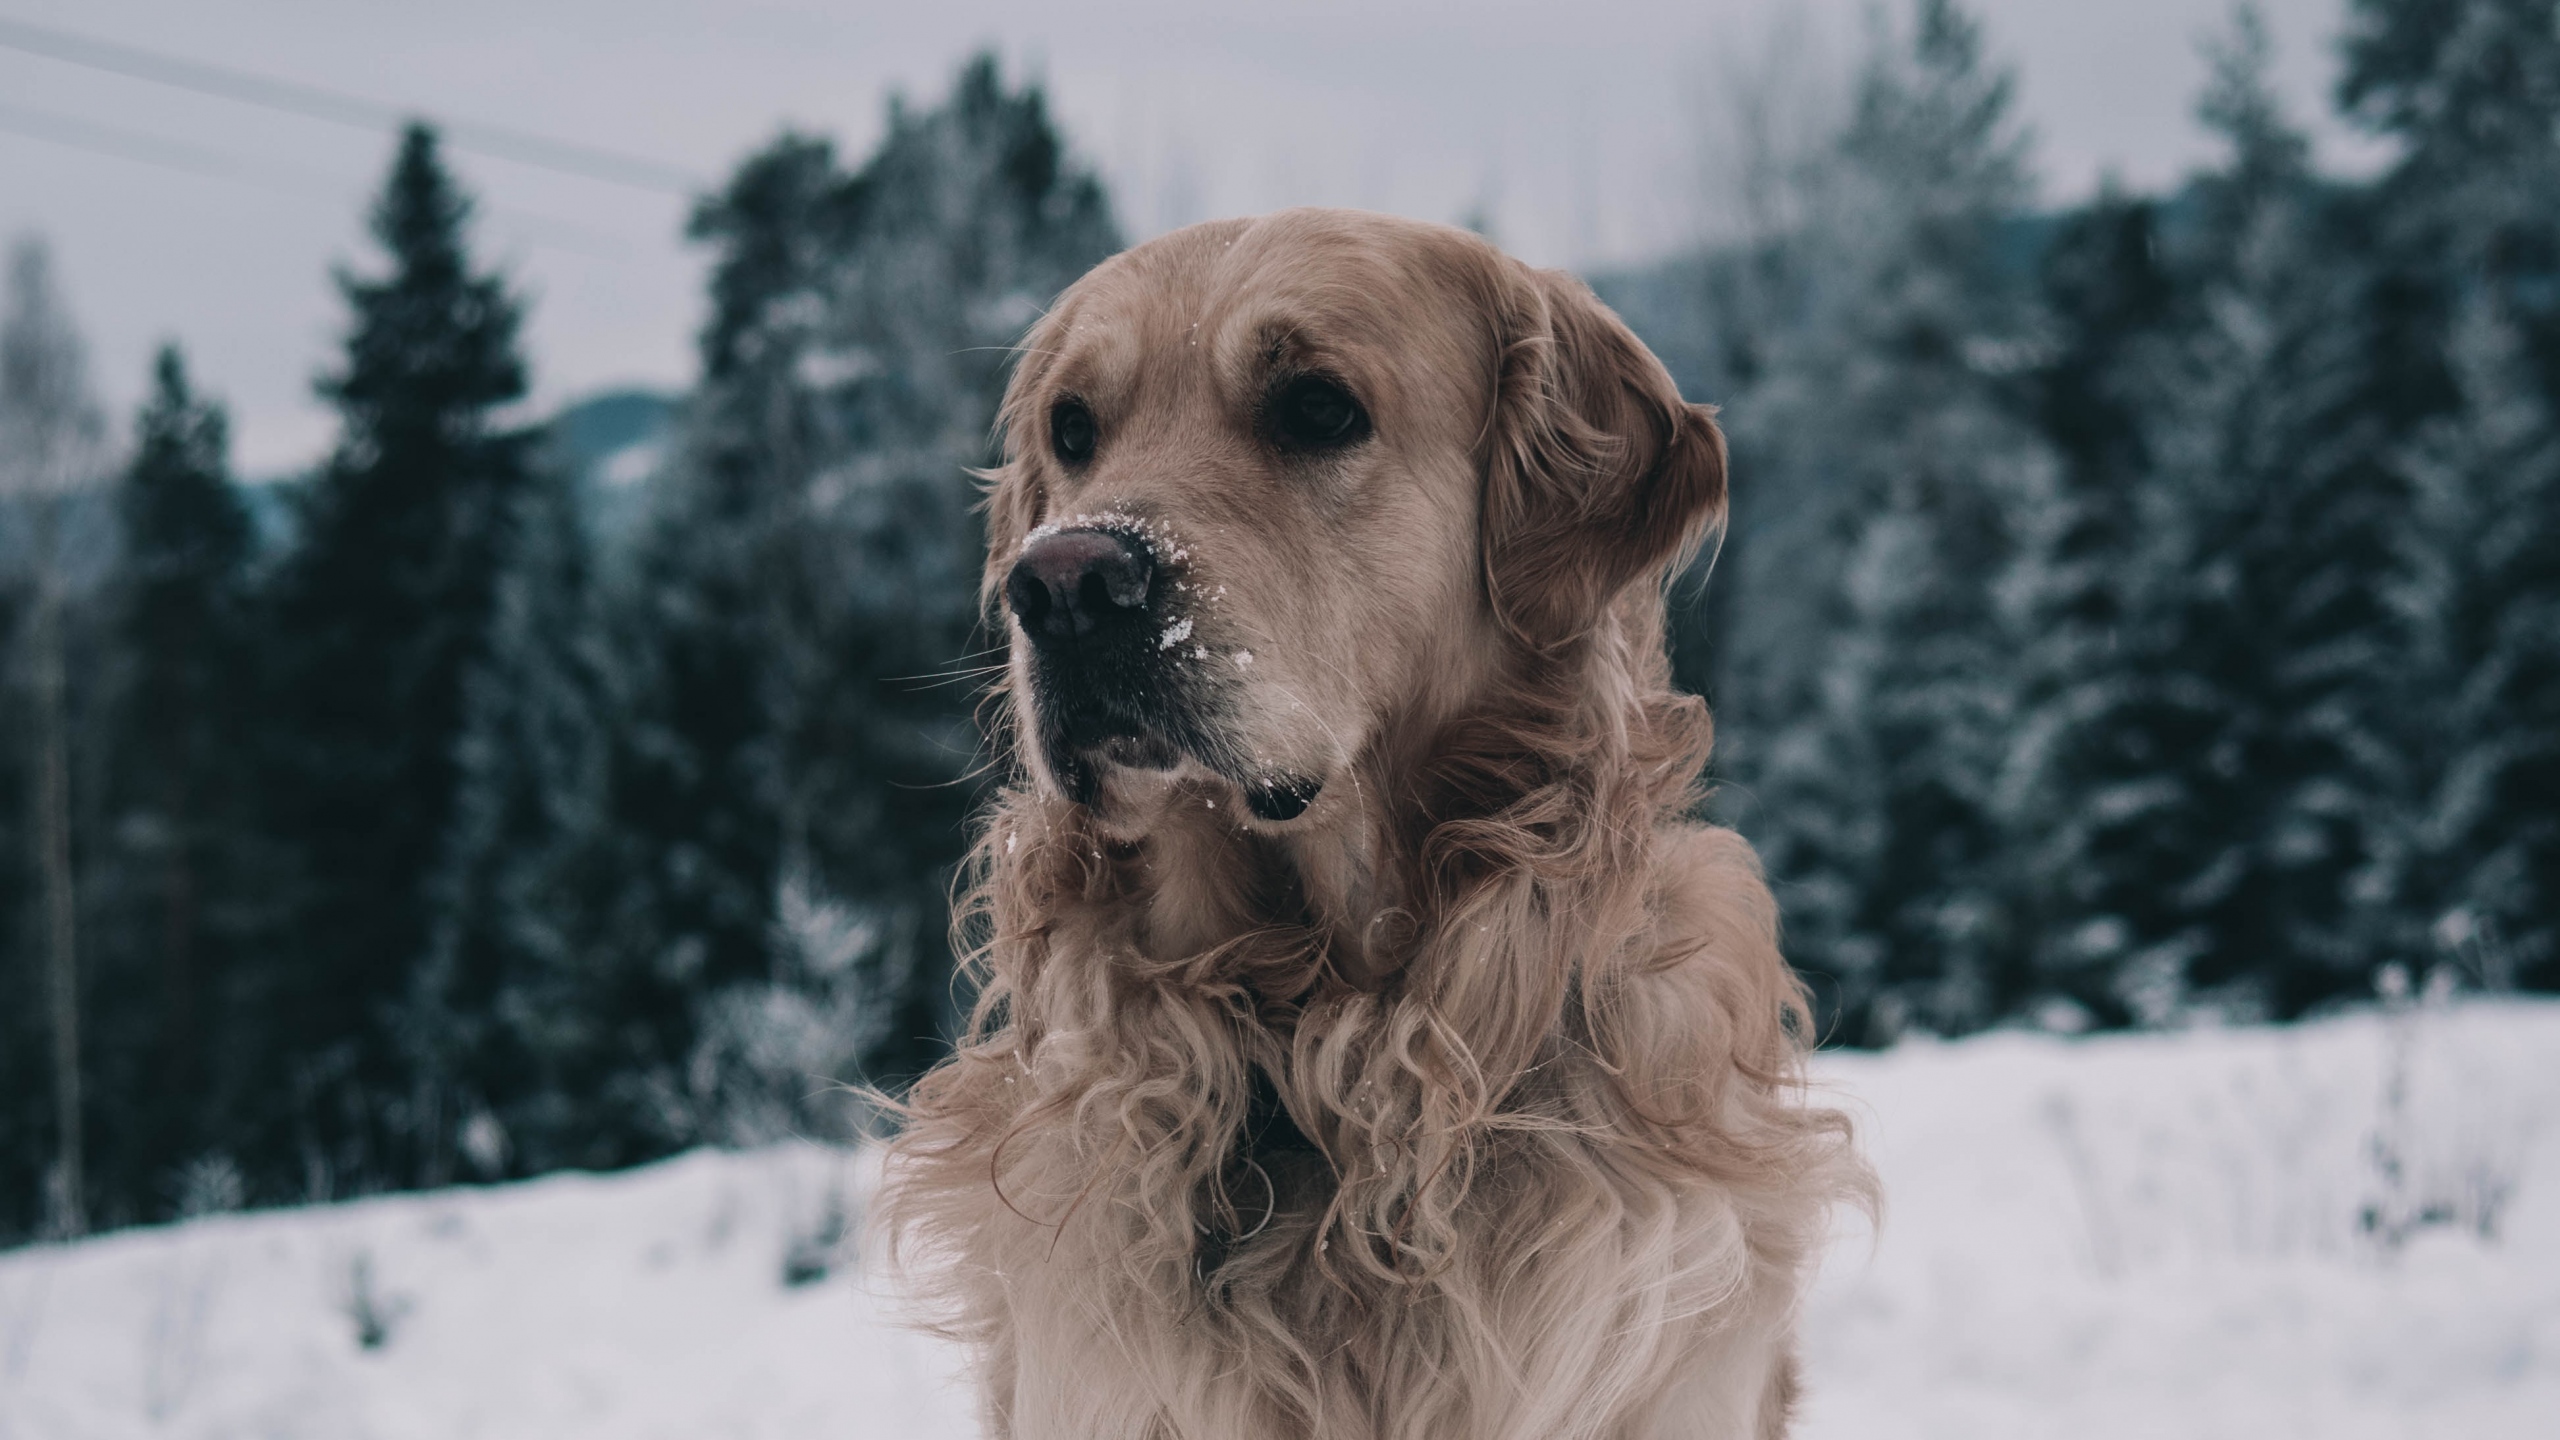 Winter Dog Wallpaper Iphone - HD Wallpaper 